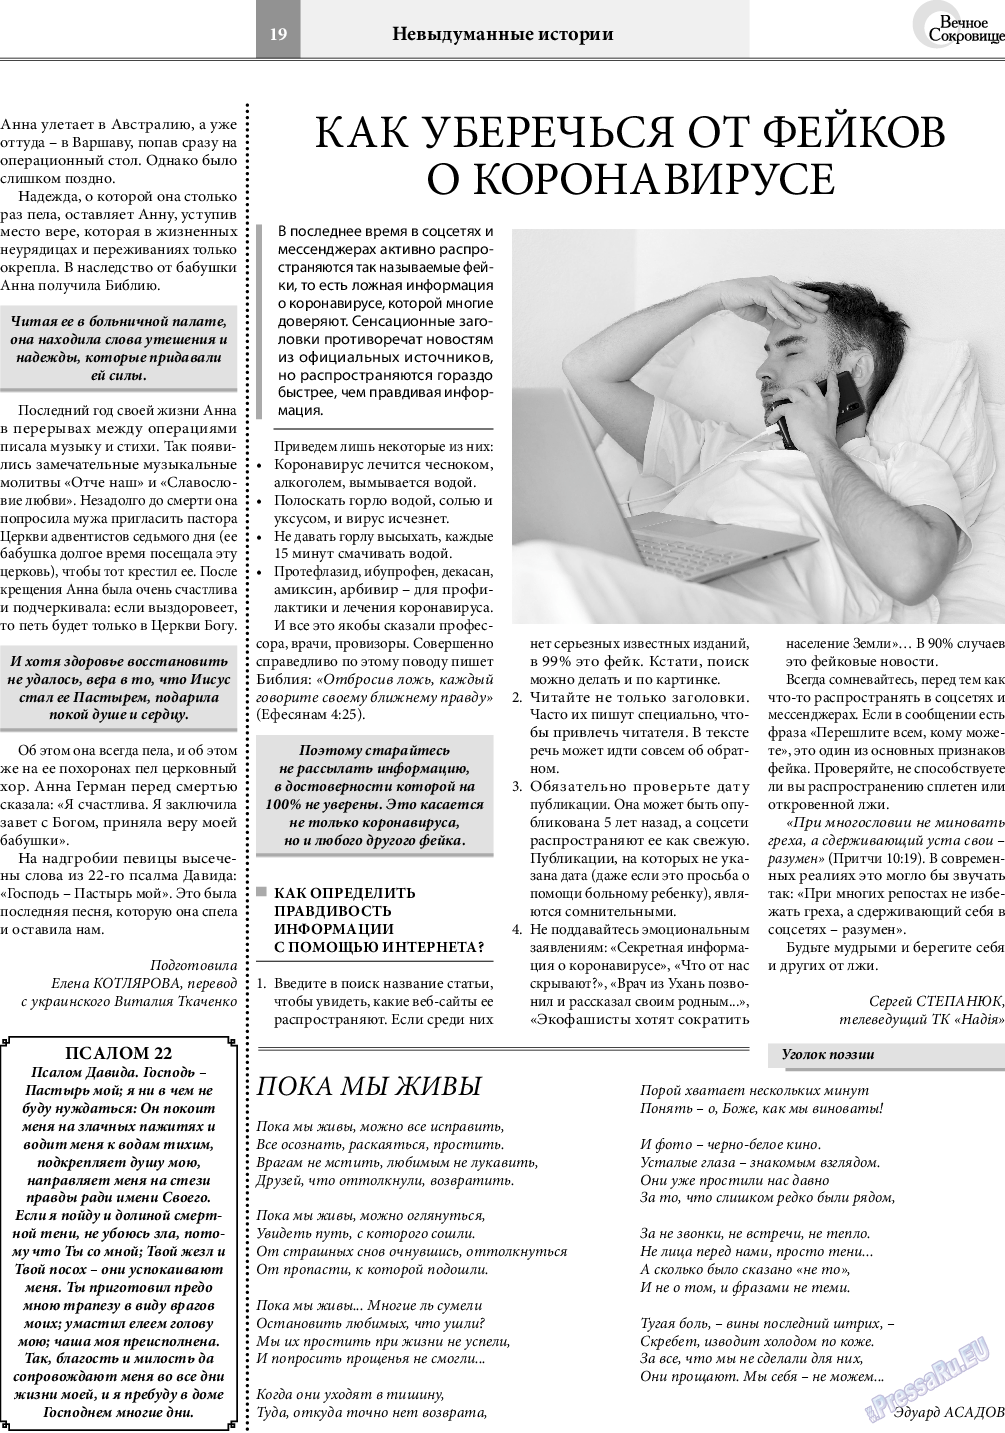 Вечное сокровище, газета. 2020 №4 стр.19